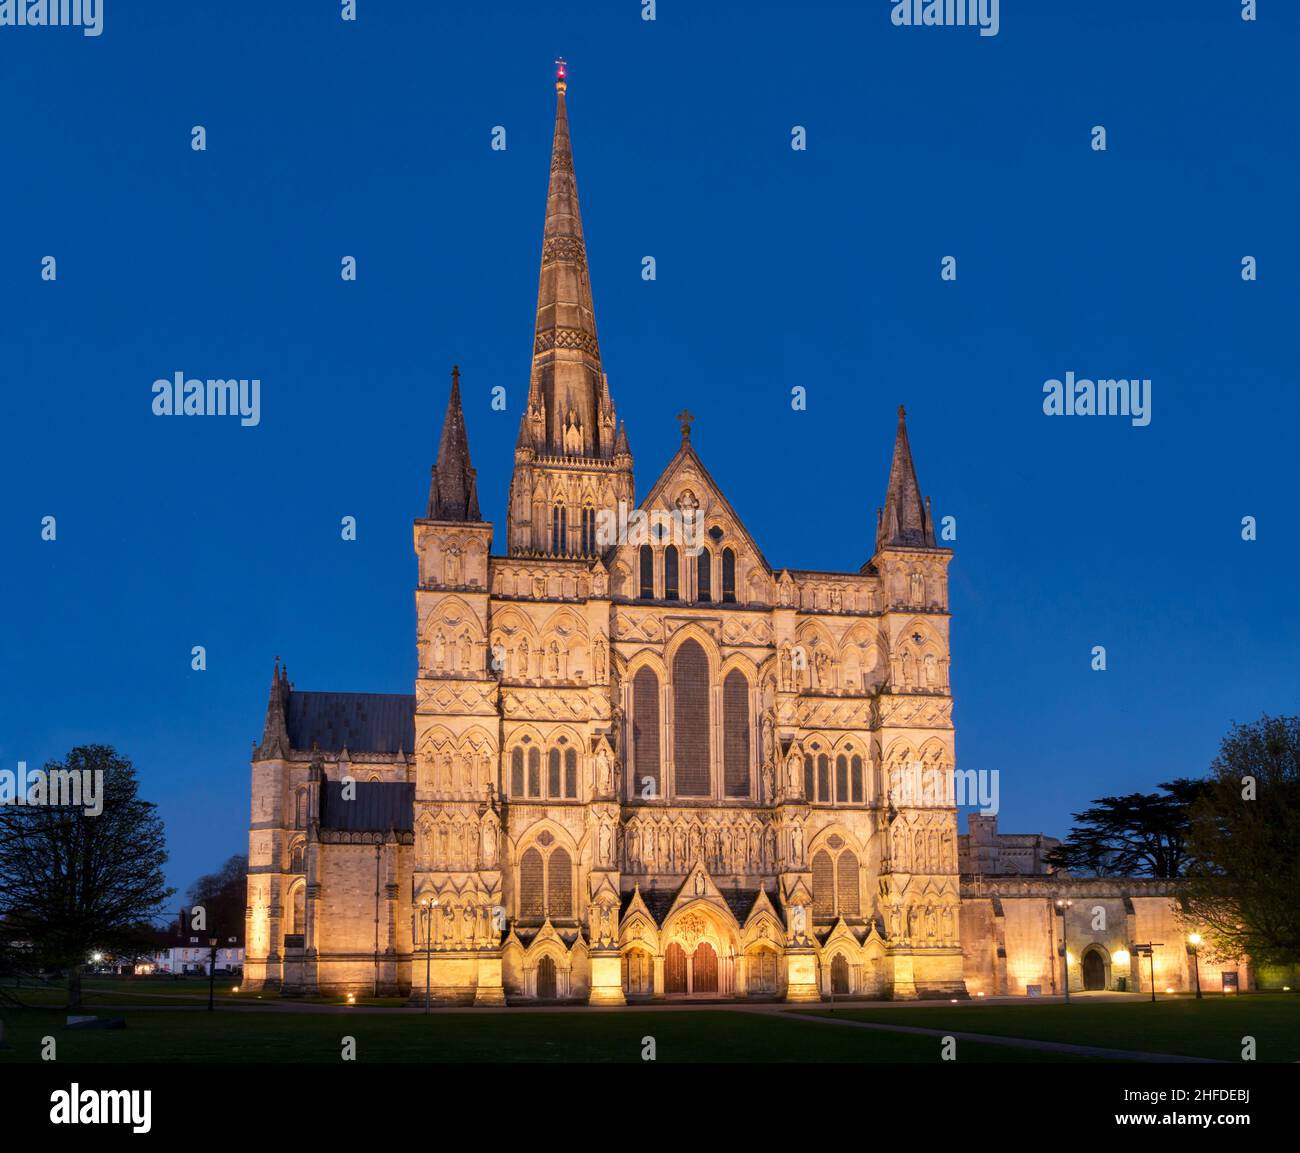 europe; UK, England, Wiltshire, Salisbury Cathedral at dusk Stock Photo